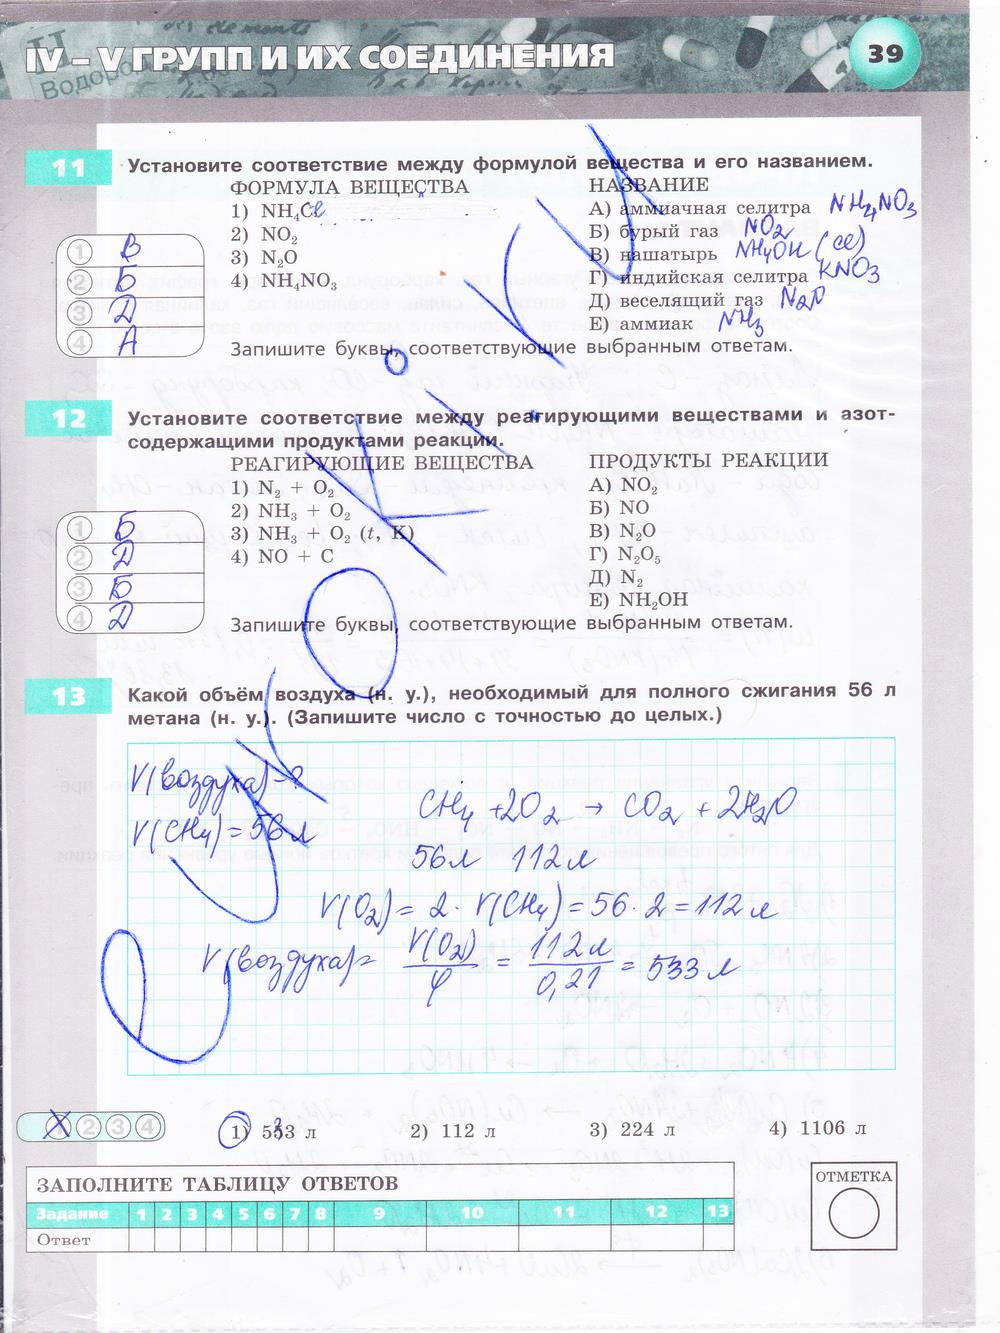 гдз 9 класс тетрадь-экзаменатор страница 39 химия Бобылева, Бирюлина